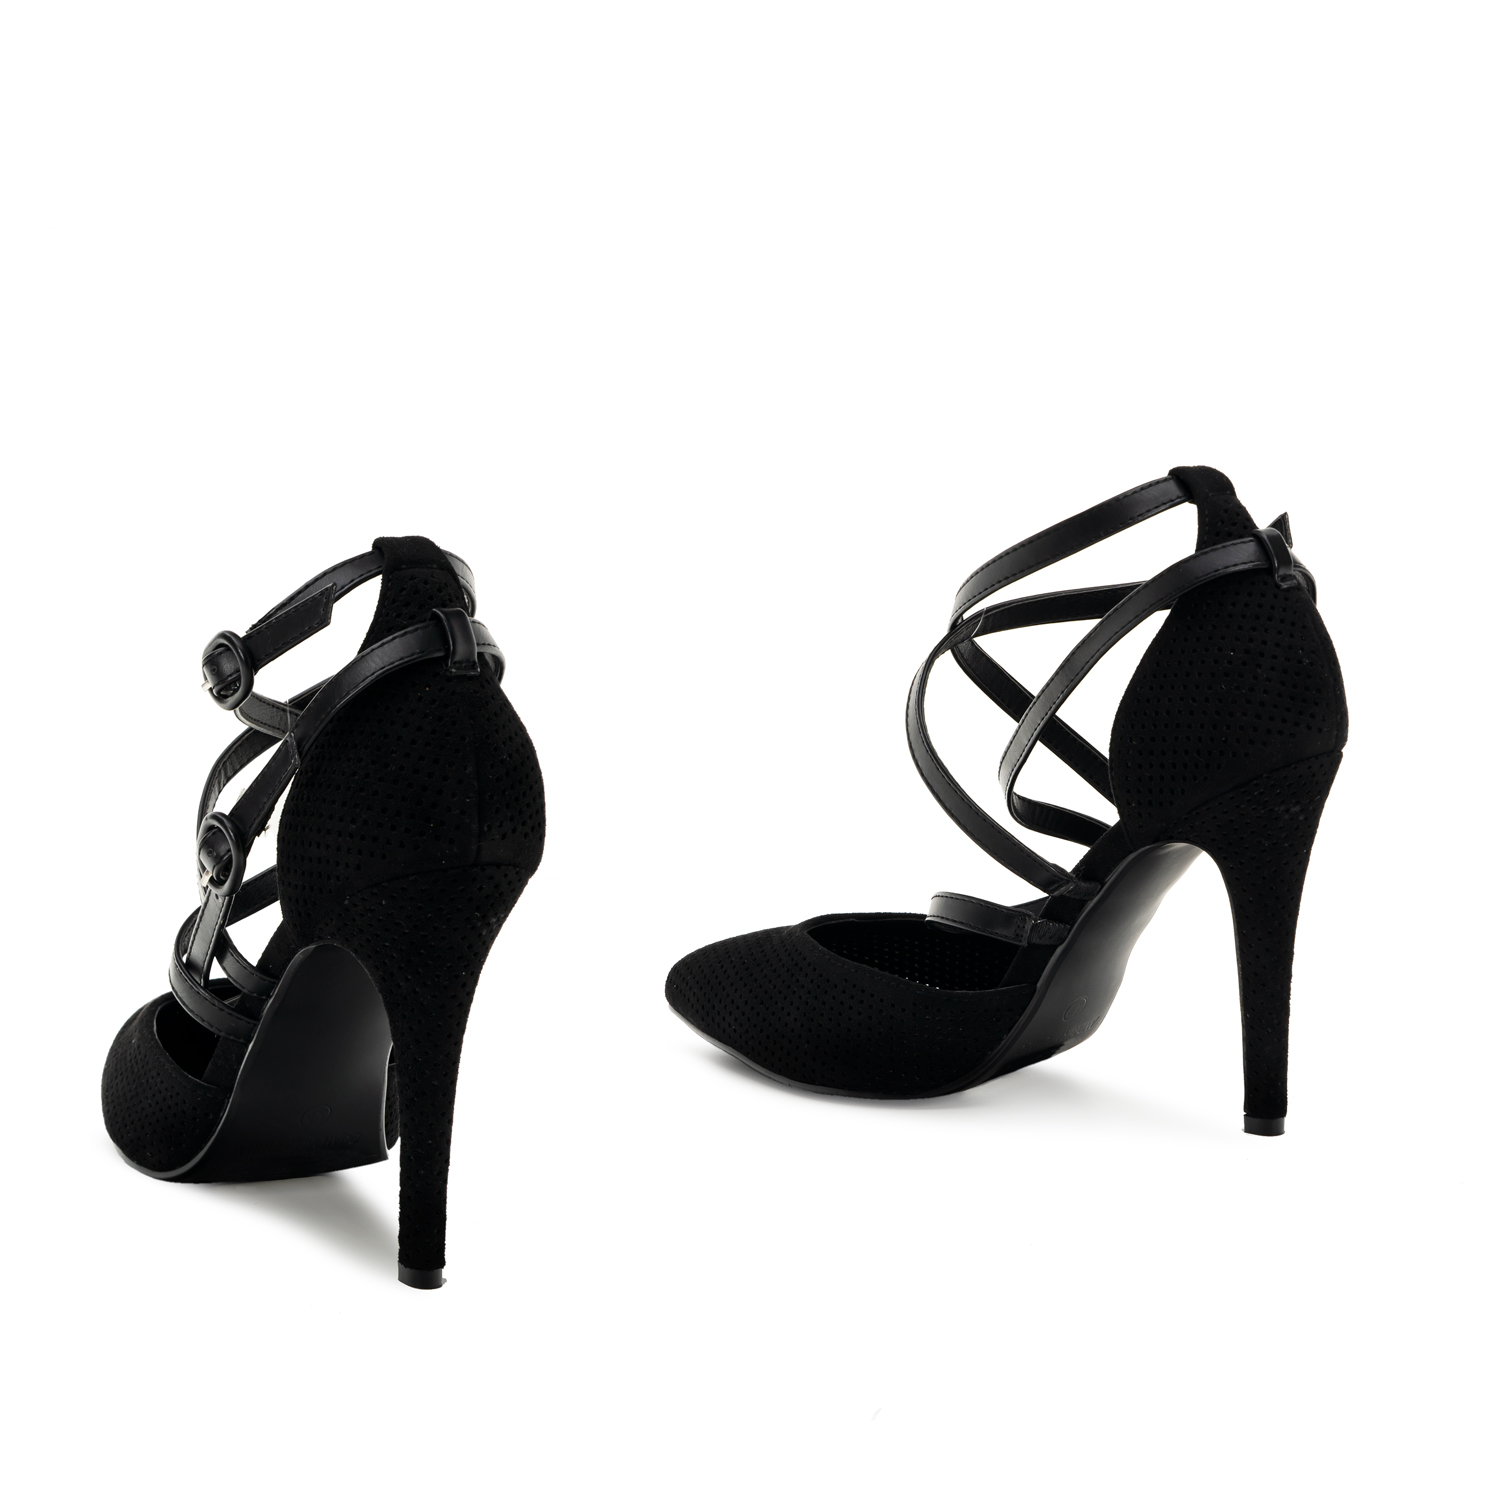 Black faux suede, die-cut court shoes 